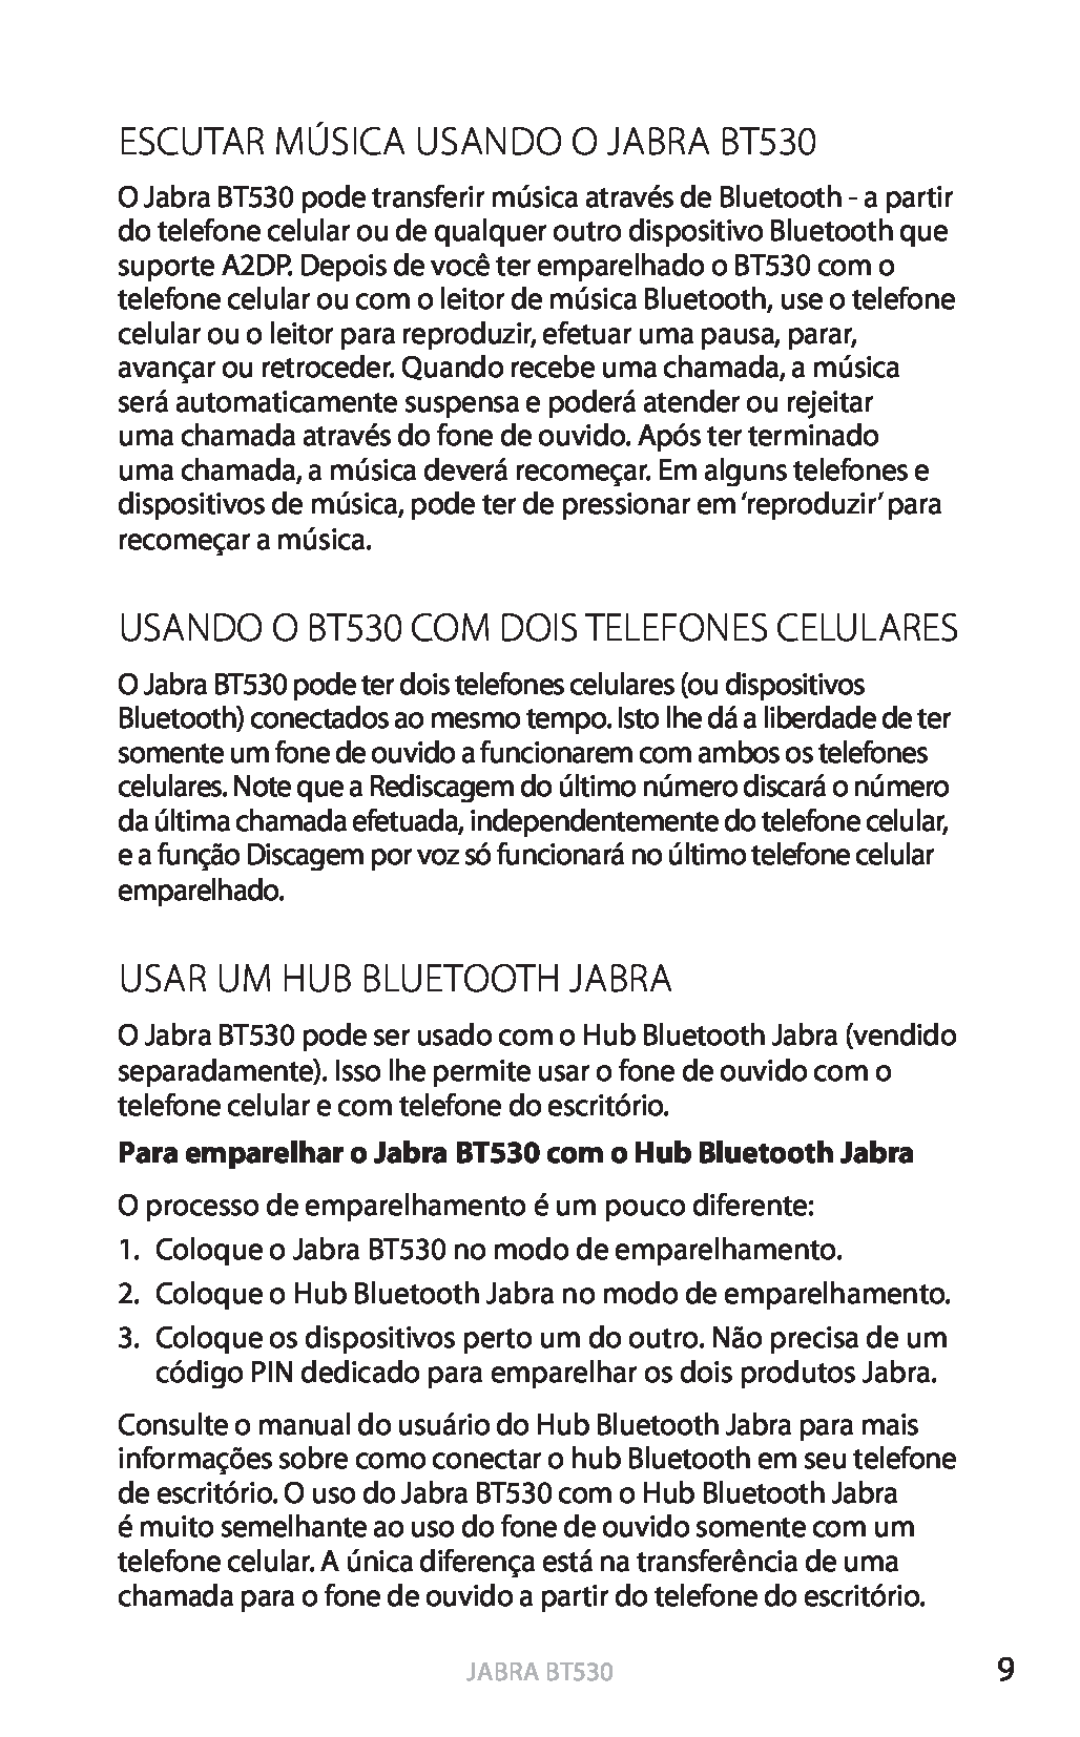 Jabra ESCUTAR MÚSICA USANDO O JABRA BT530, Usar Um Hub Bluetooth Jabra, USANDO O BT530 COM DOIS TELEFONES CELULARES 